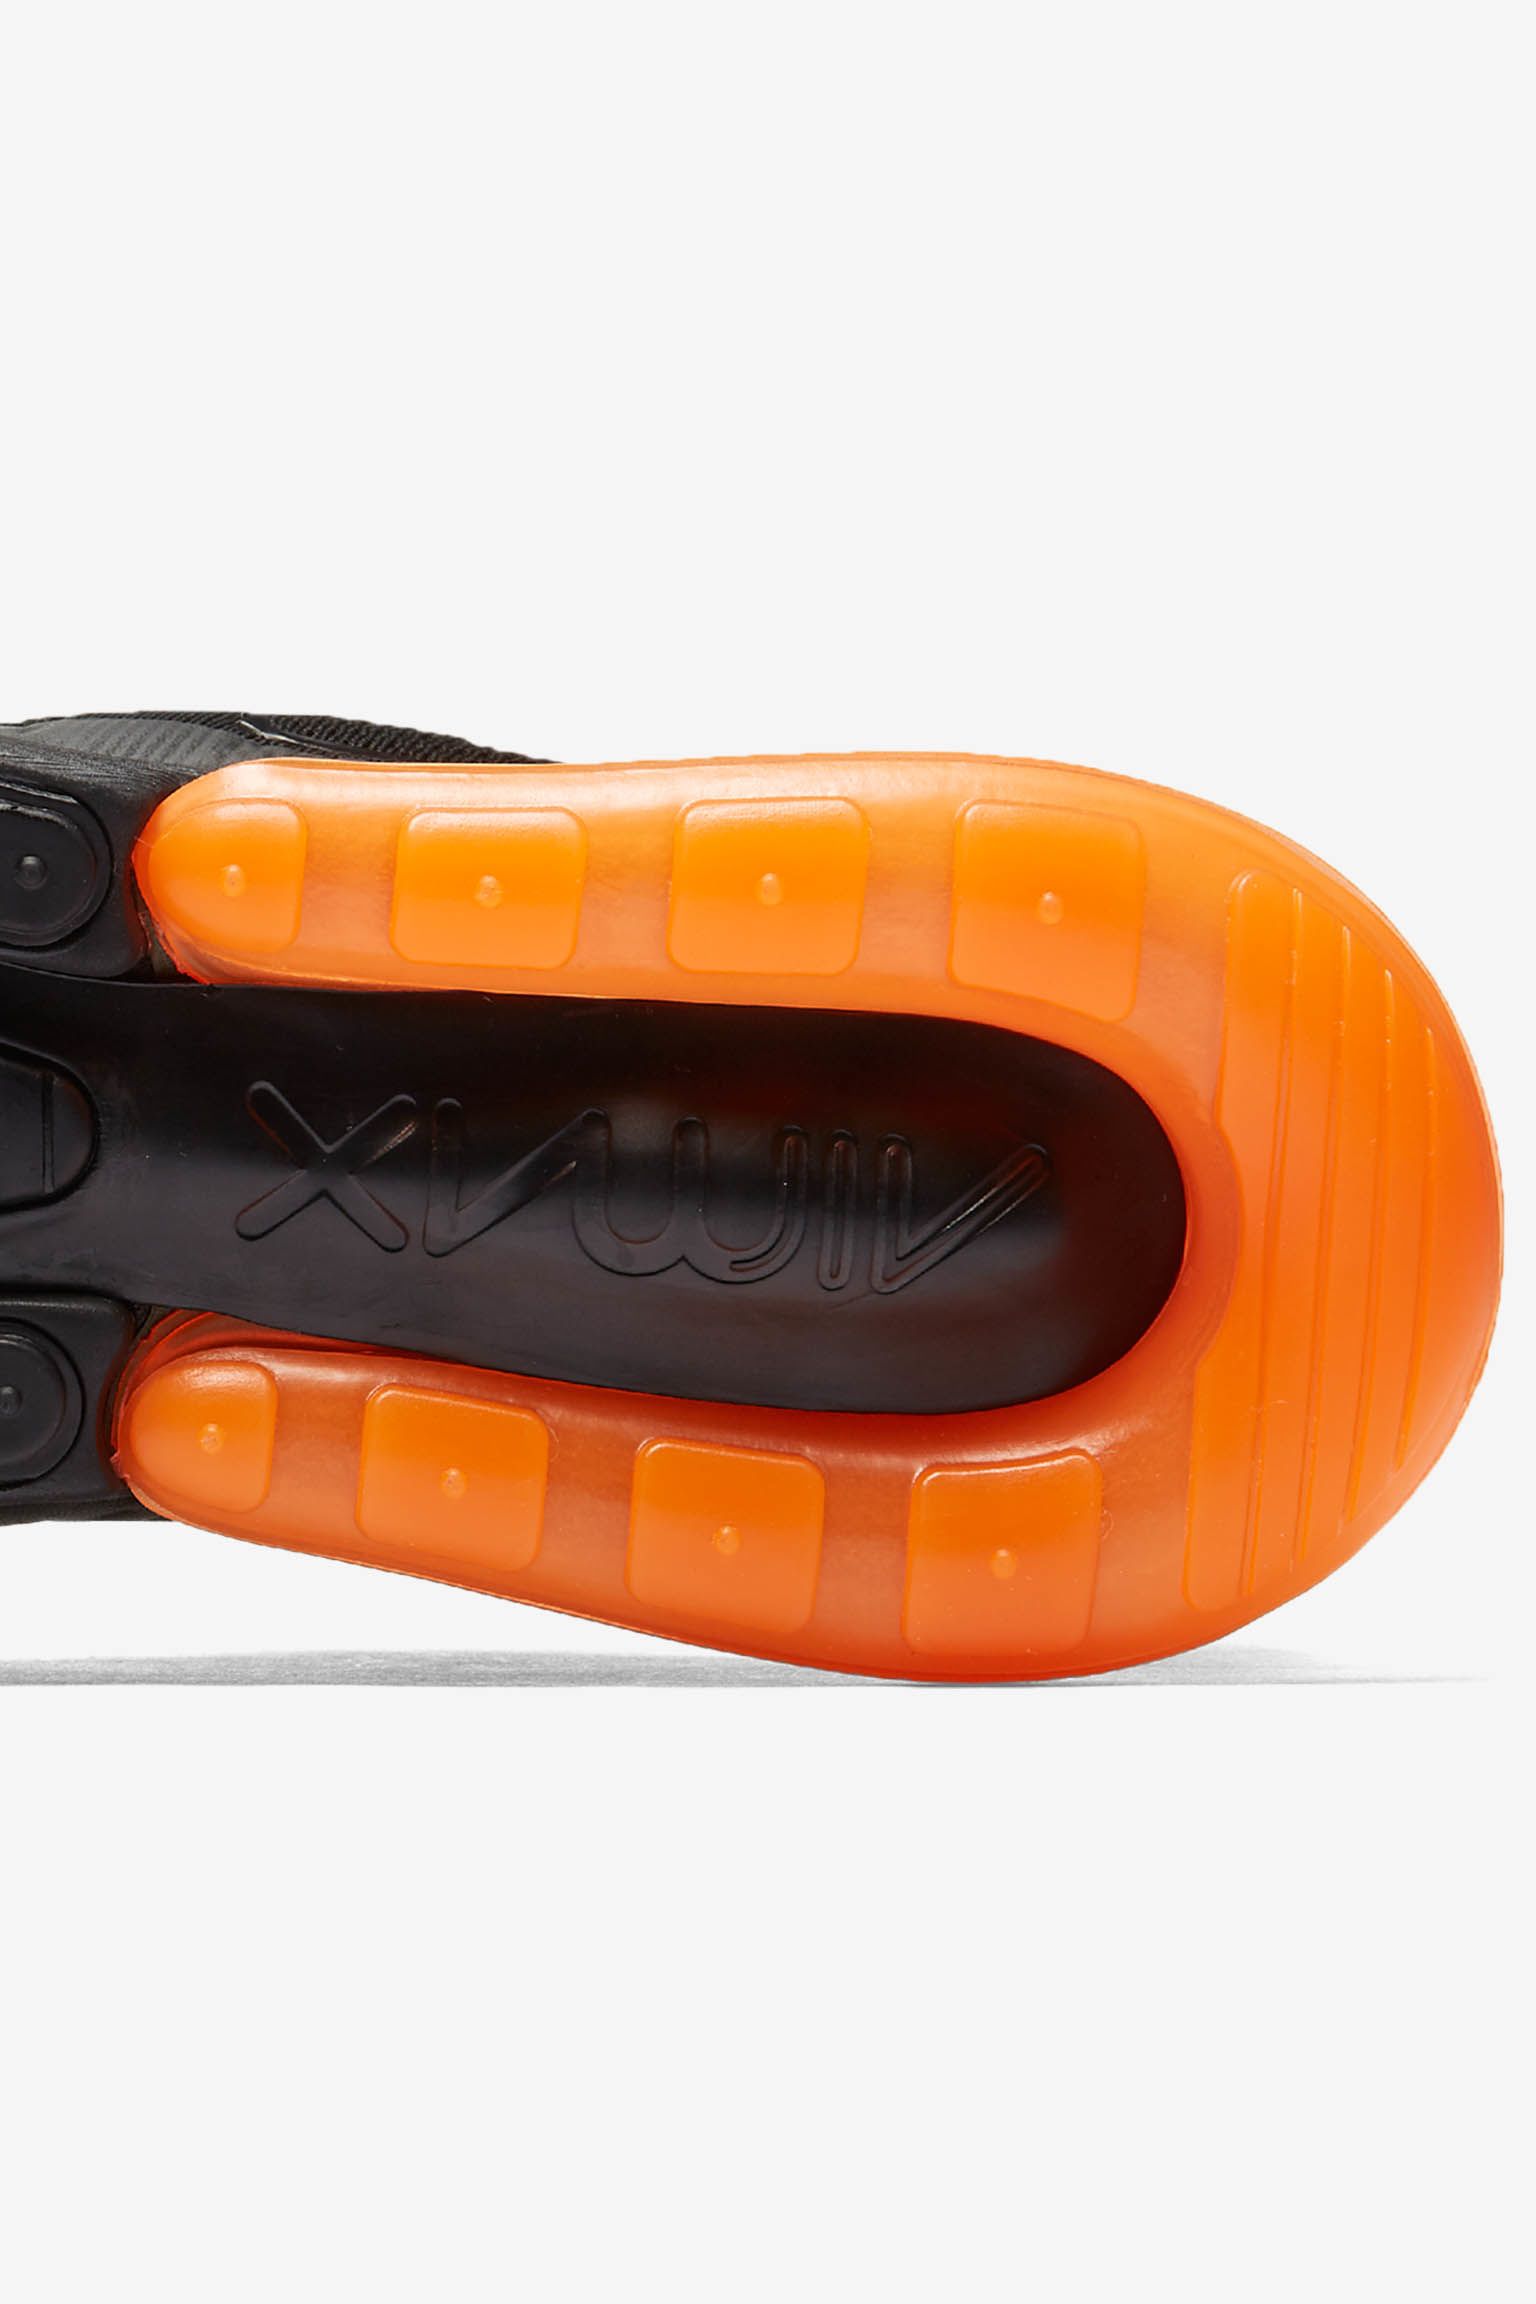 Nike Air Max 270 in Tonal Orange